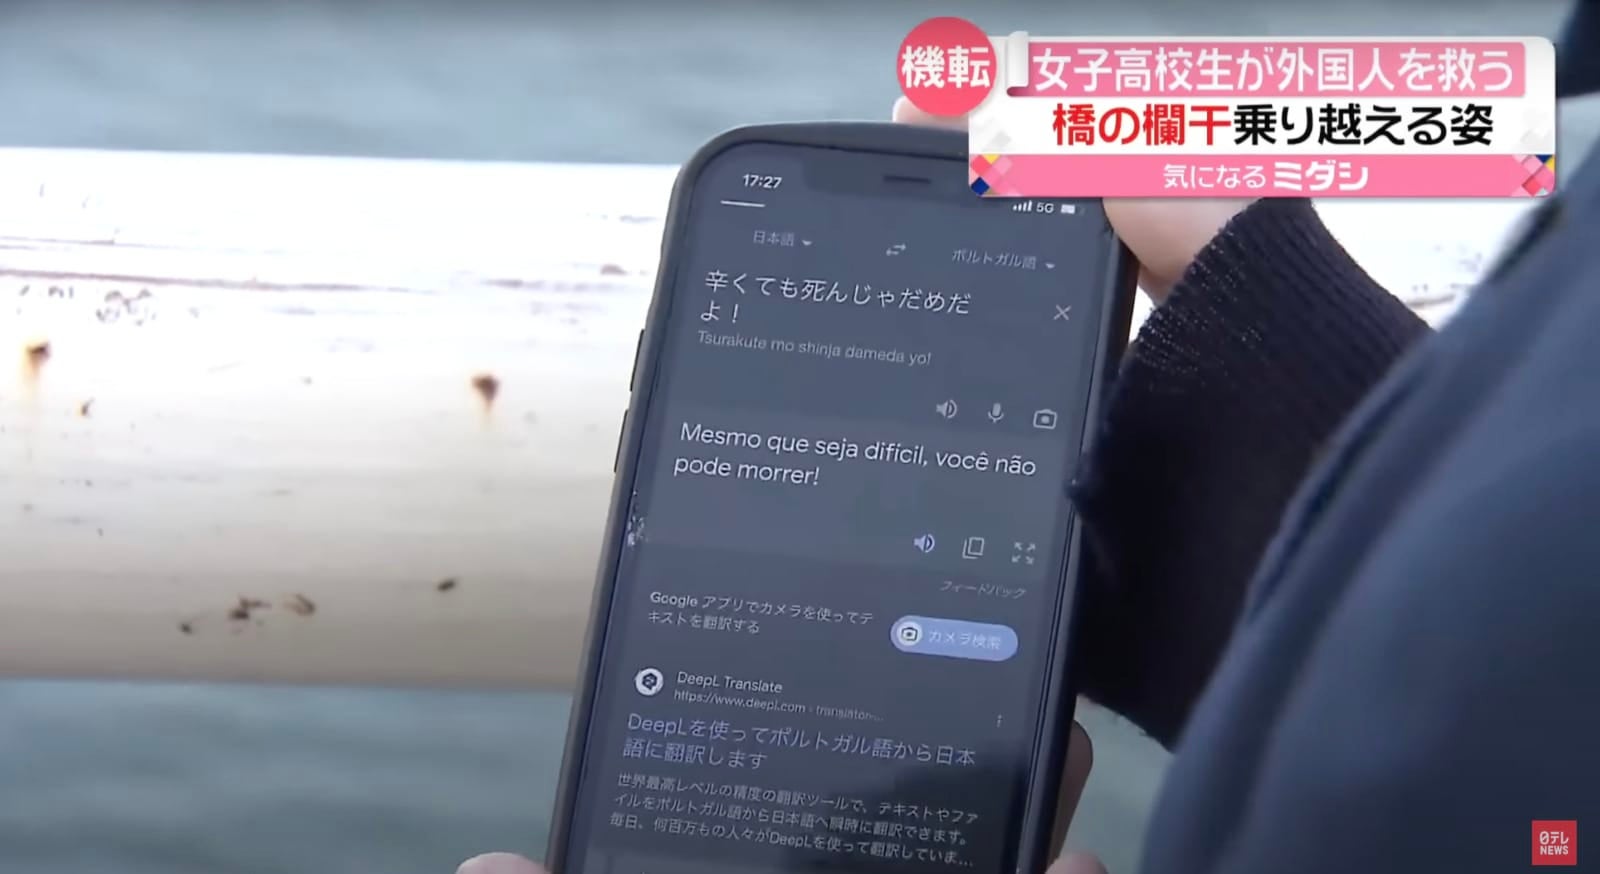 นักเรียนญี่ปุ่นใช้ google translate ช่วยคนกระโดดสะพานฆ่าตัวตาย